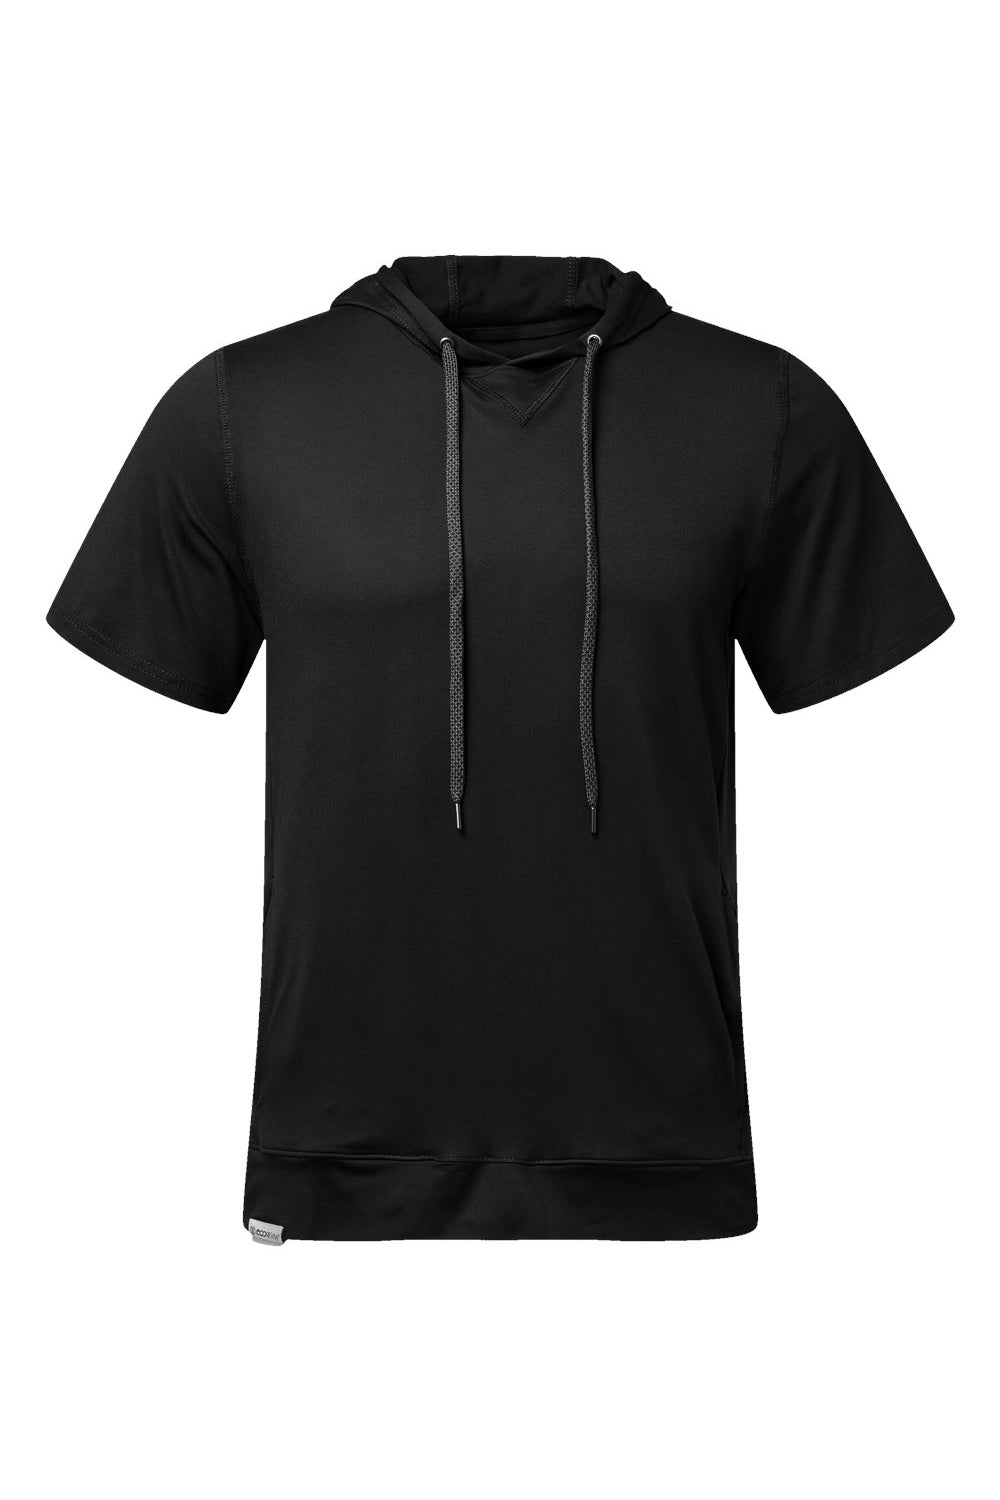 Holloway 222505 Mens Eco Revive Ventura Short Sleeve Hooded Sweatshirt Hoodie Black Flat Front